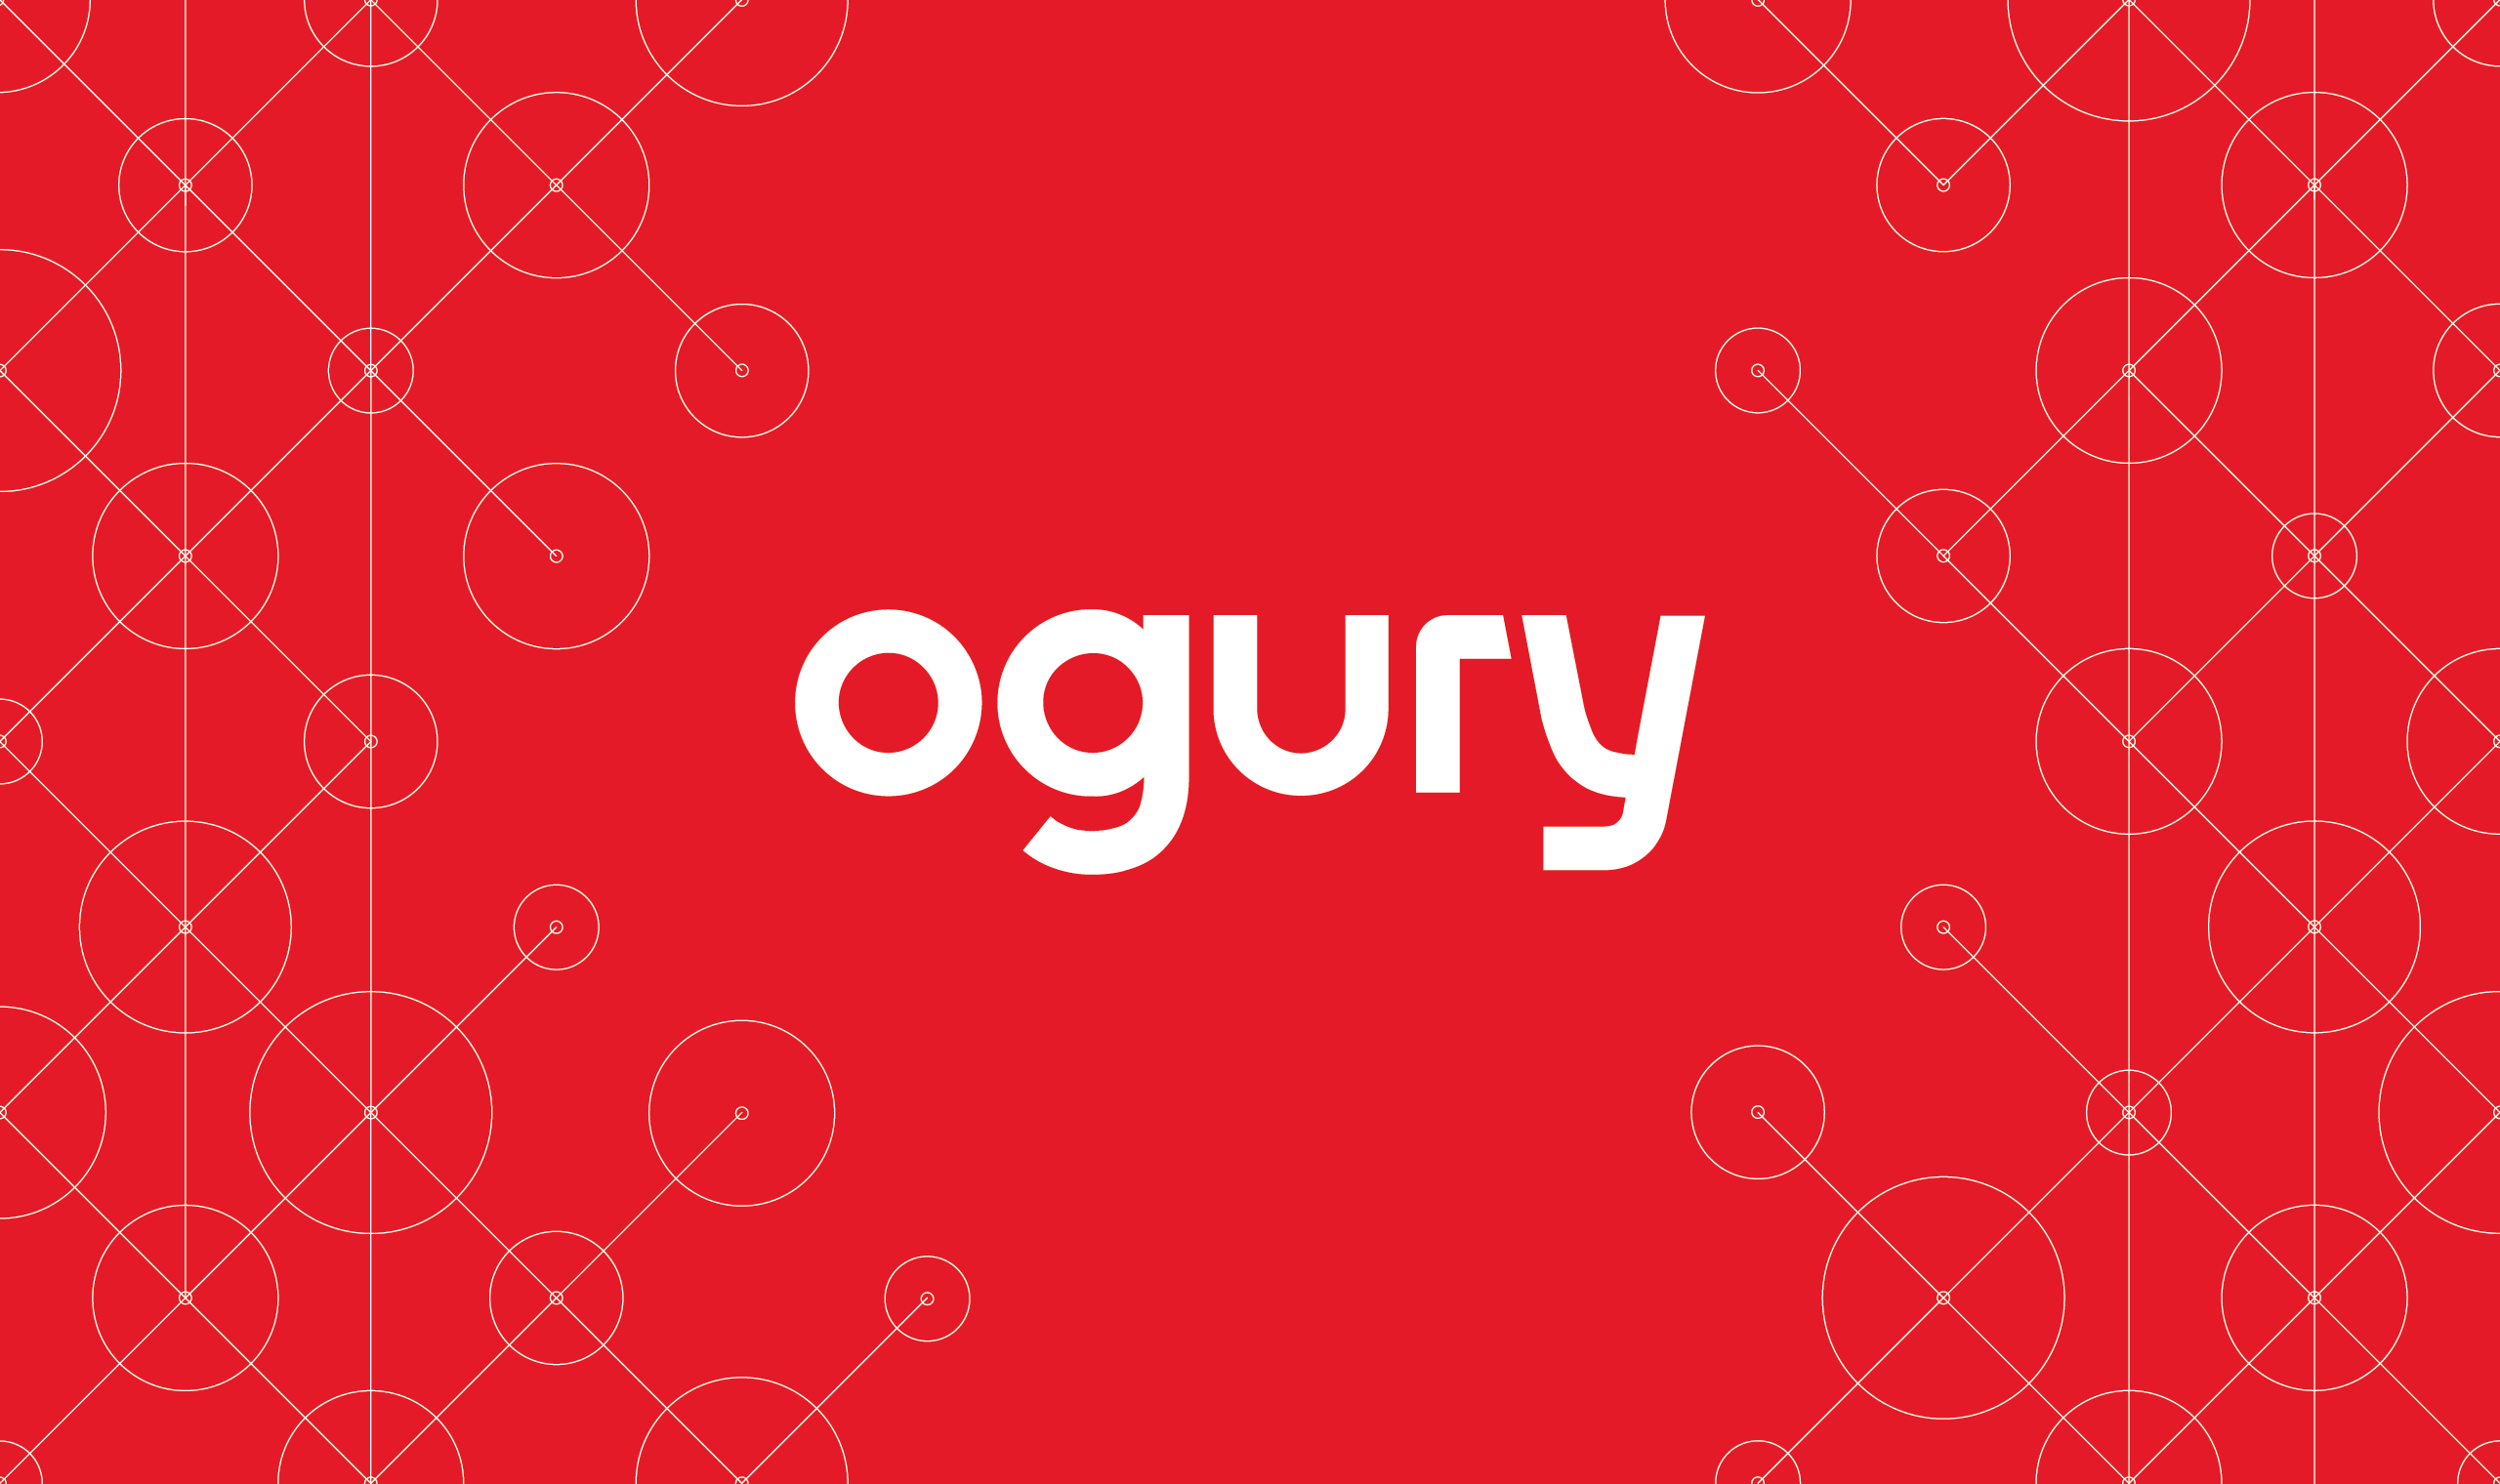 Ogury dona oltre 1 milione di dollari di spazio pubblicitario a organizzazioni non-profit